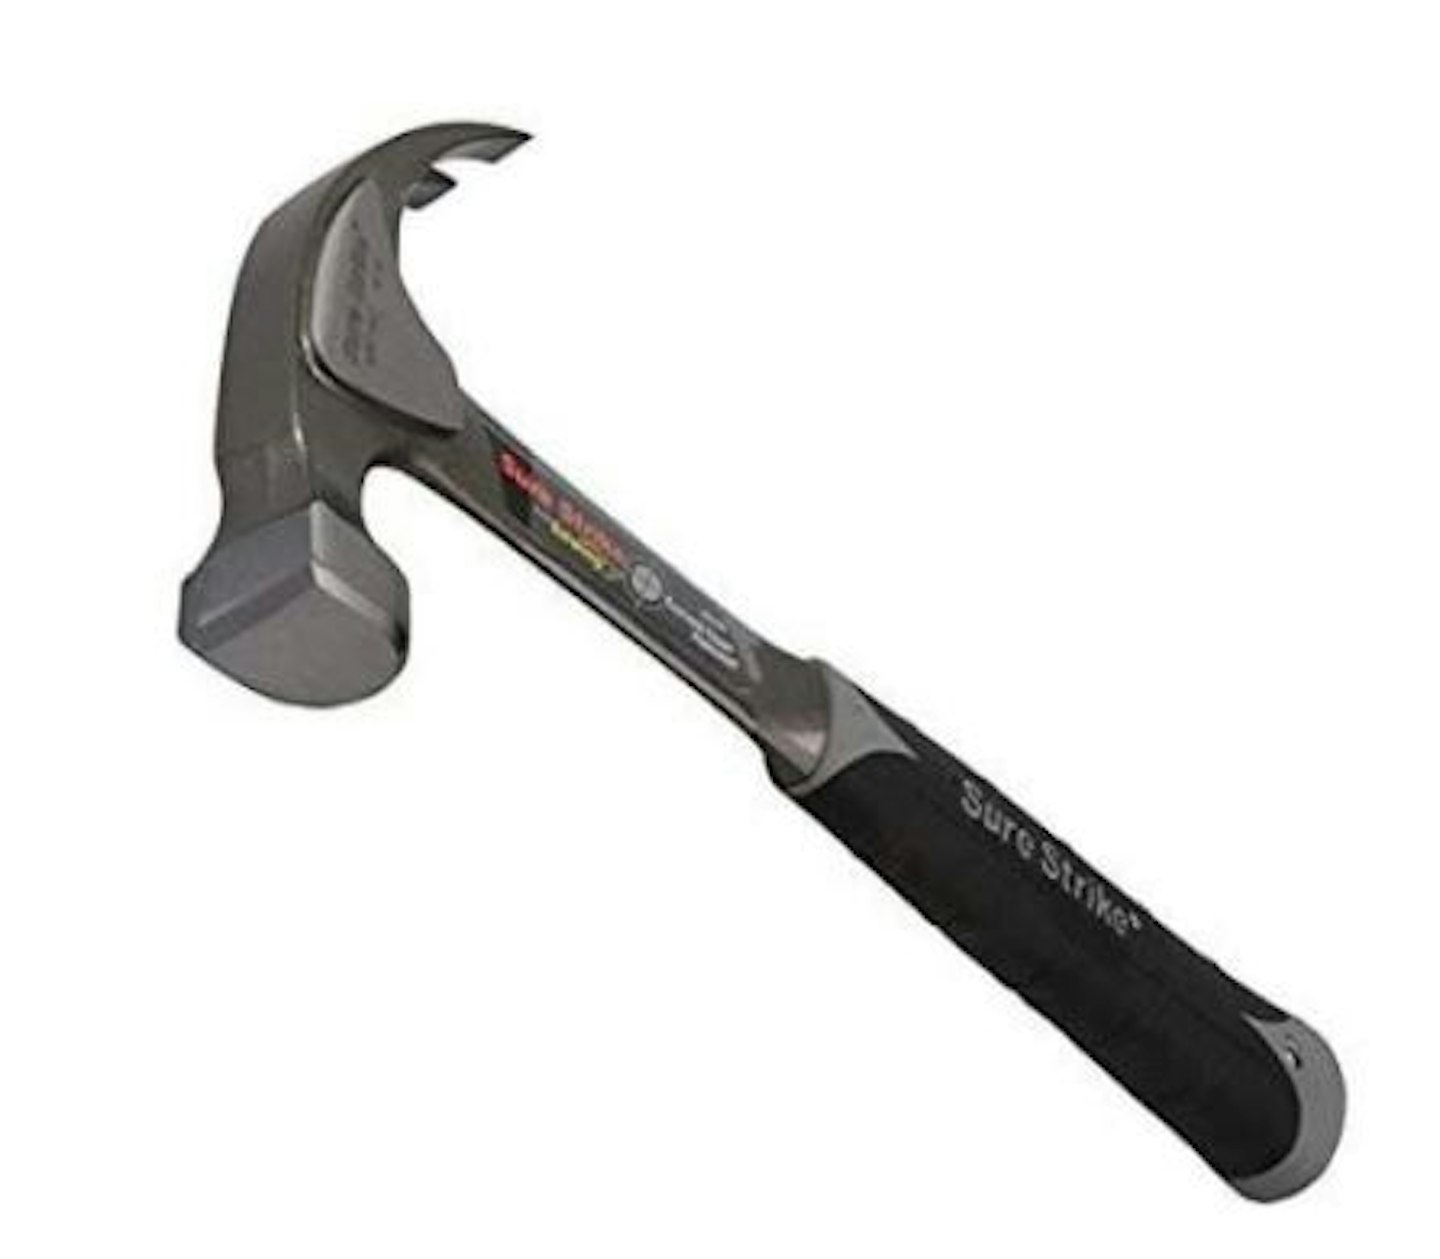 Estwing Surestrike Claw Hammer